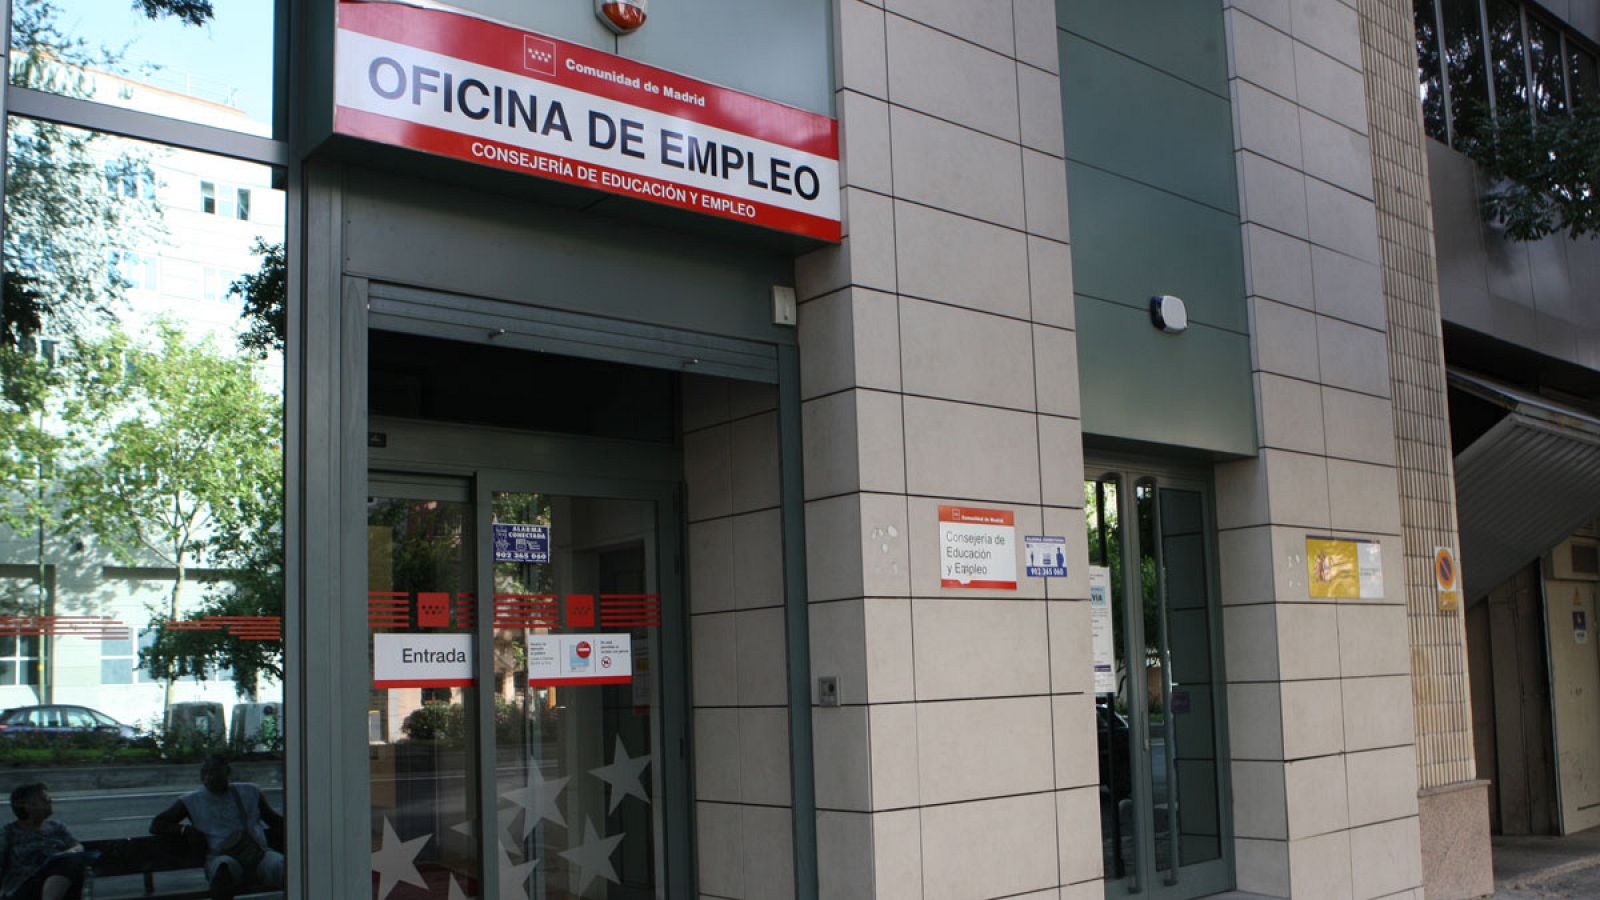 Exterior de una oficina de empleo en Madrid